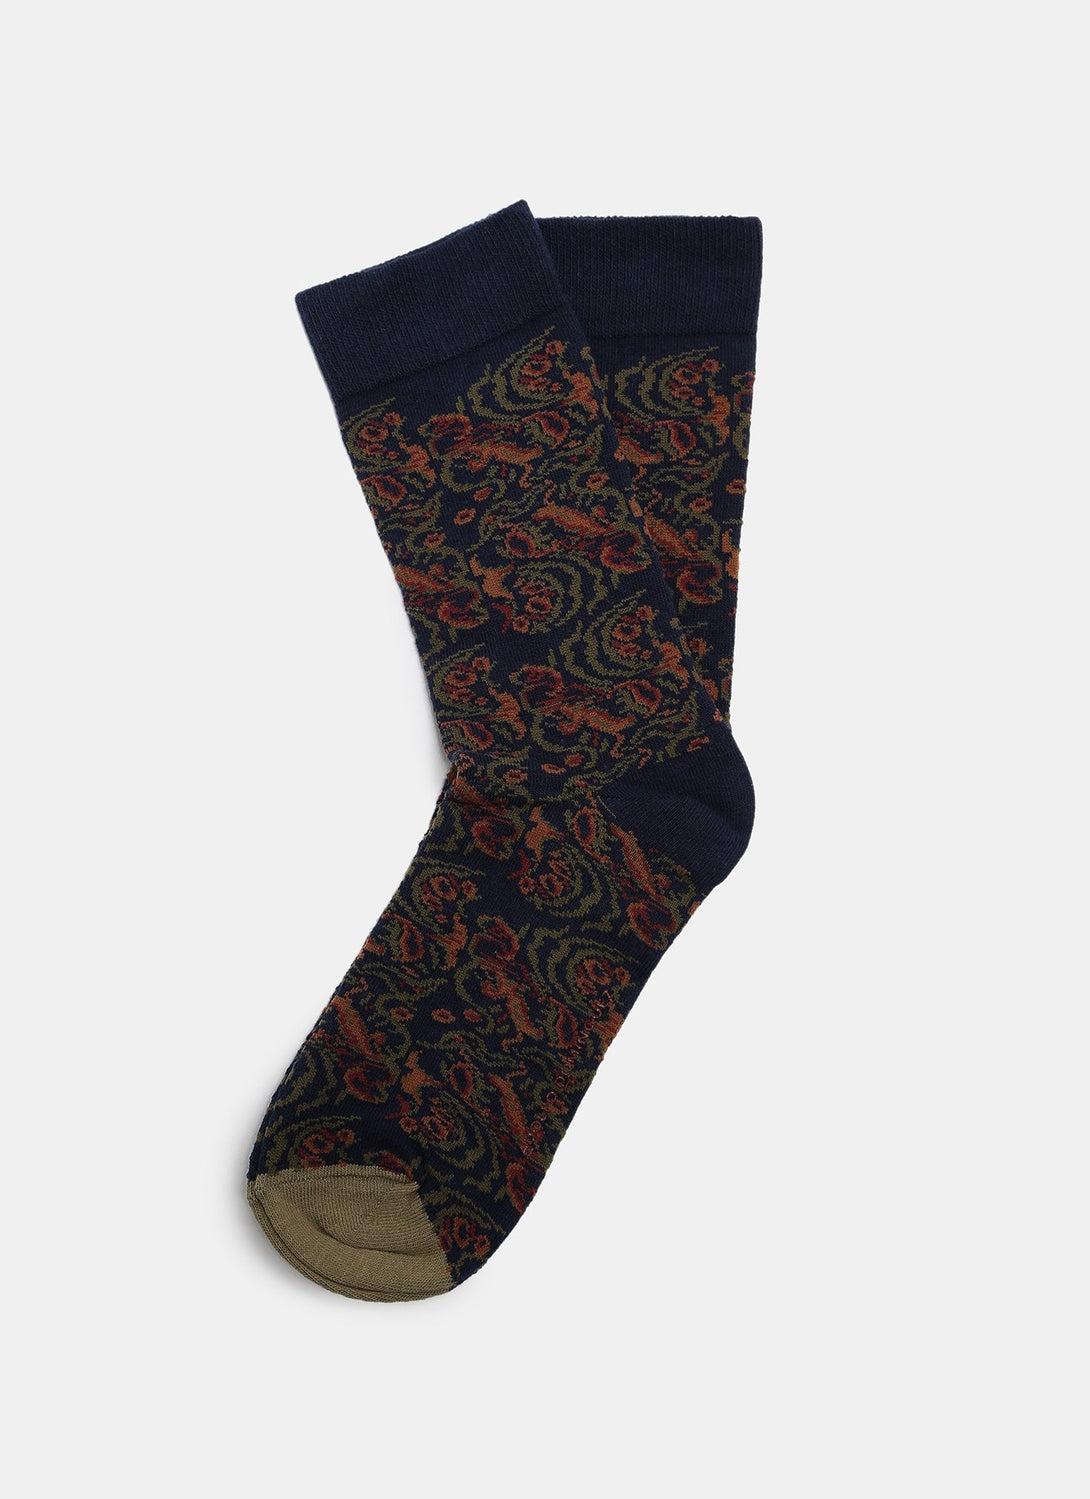 Men Socks | Multicolor Jacquard Low Cut Socks by Spanish designer Adolfo Dominguez